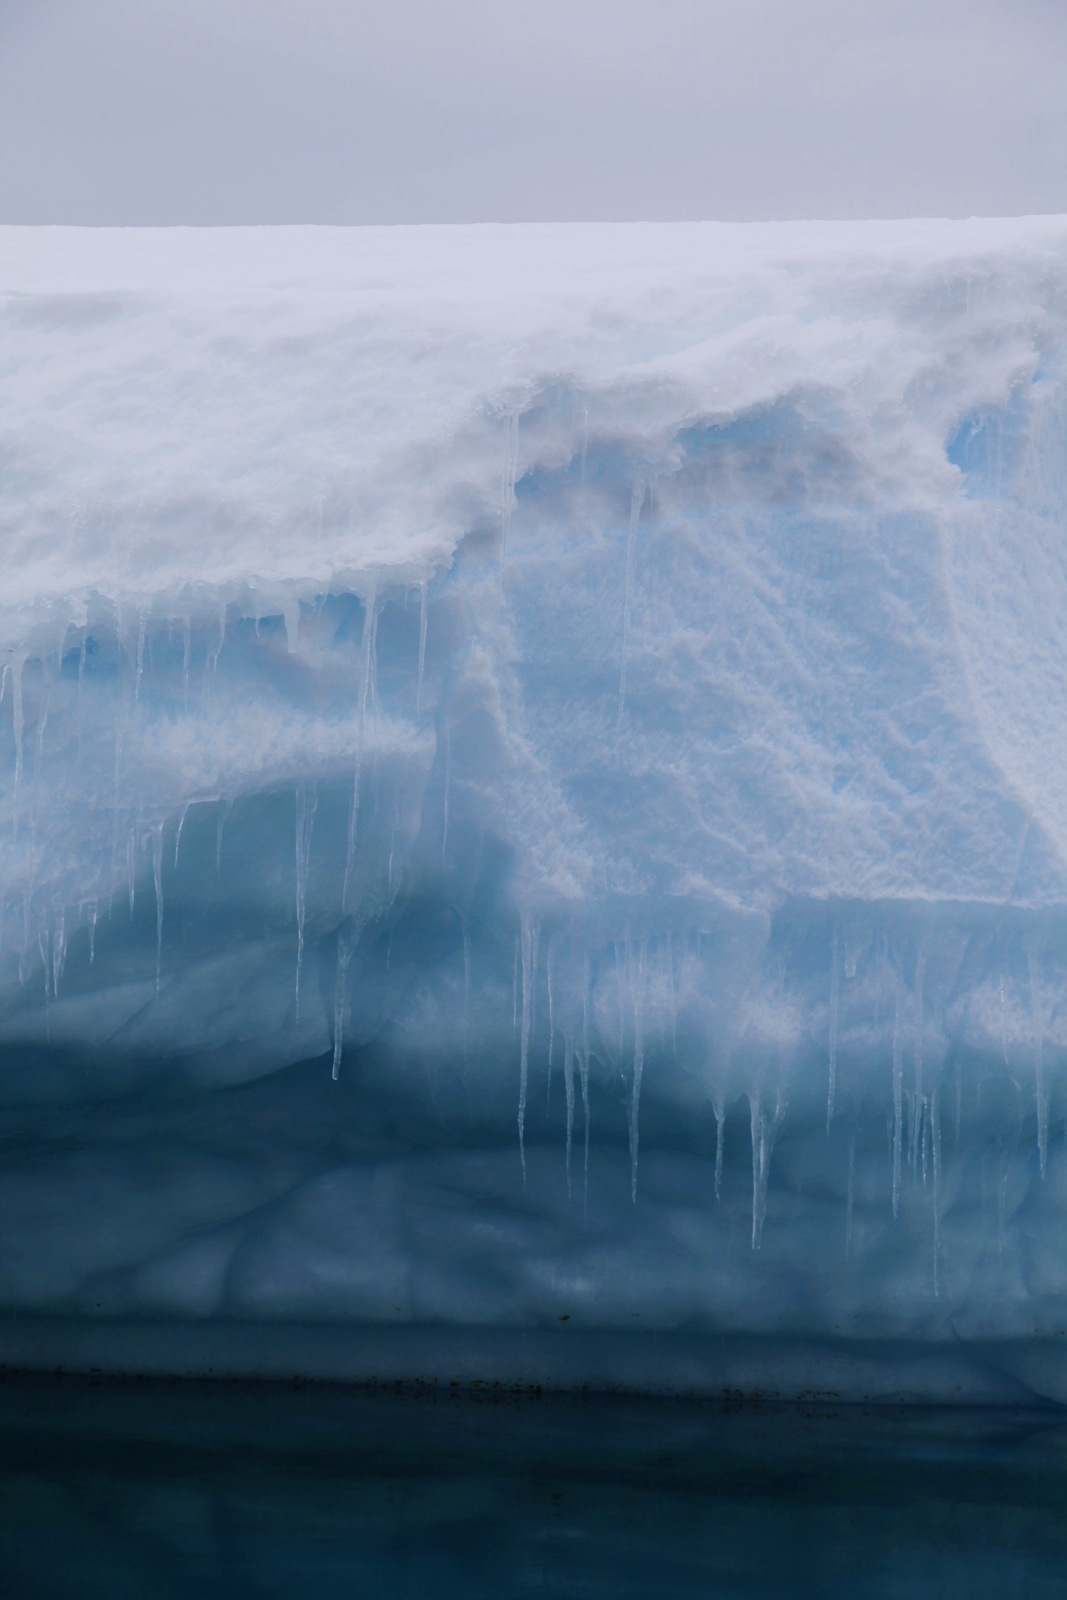 Icebergs in Antarctica.